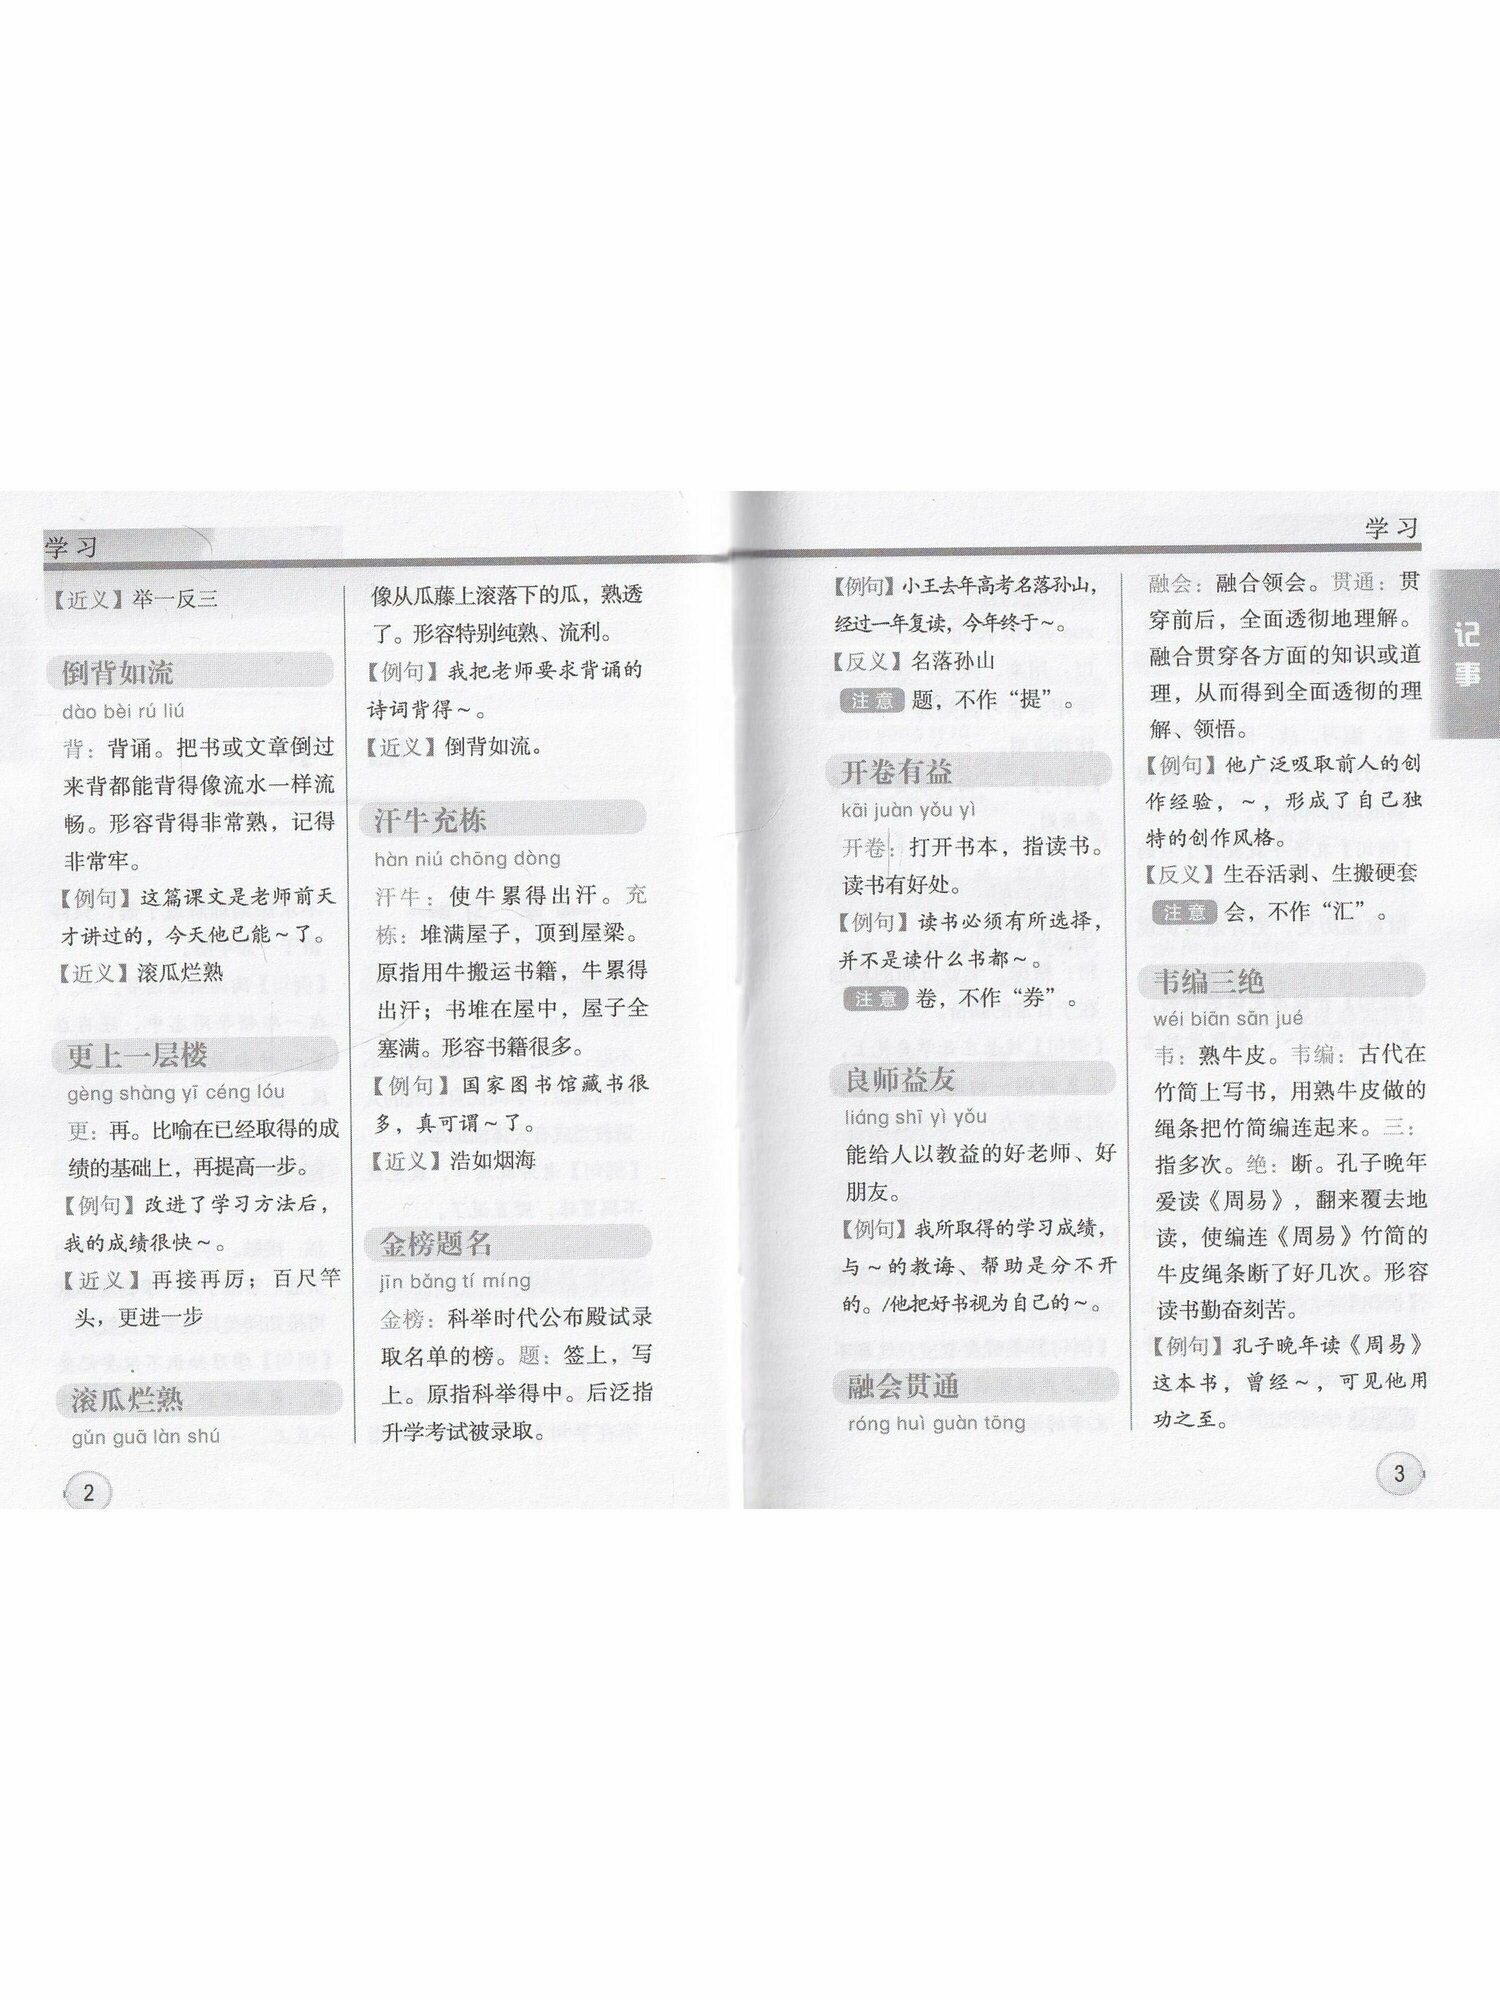 Толковый словарь китайских идиом - фото №11